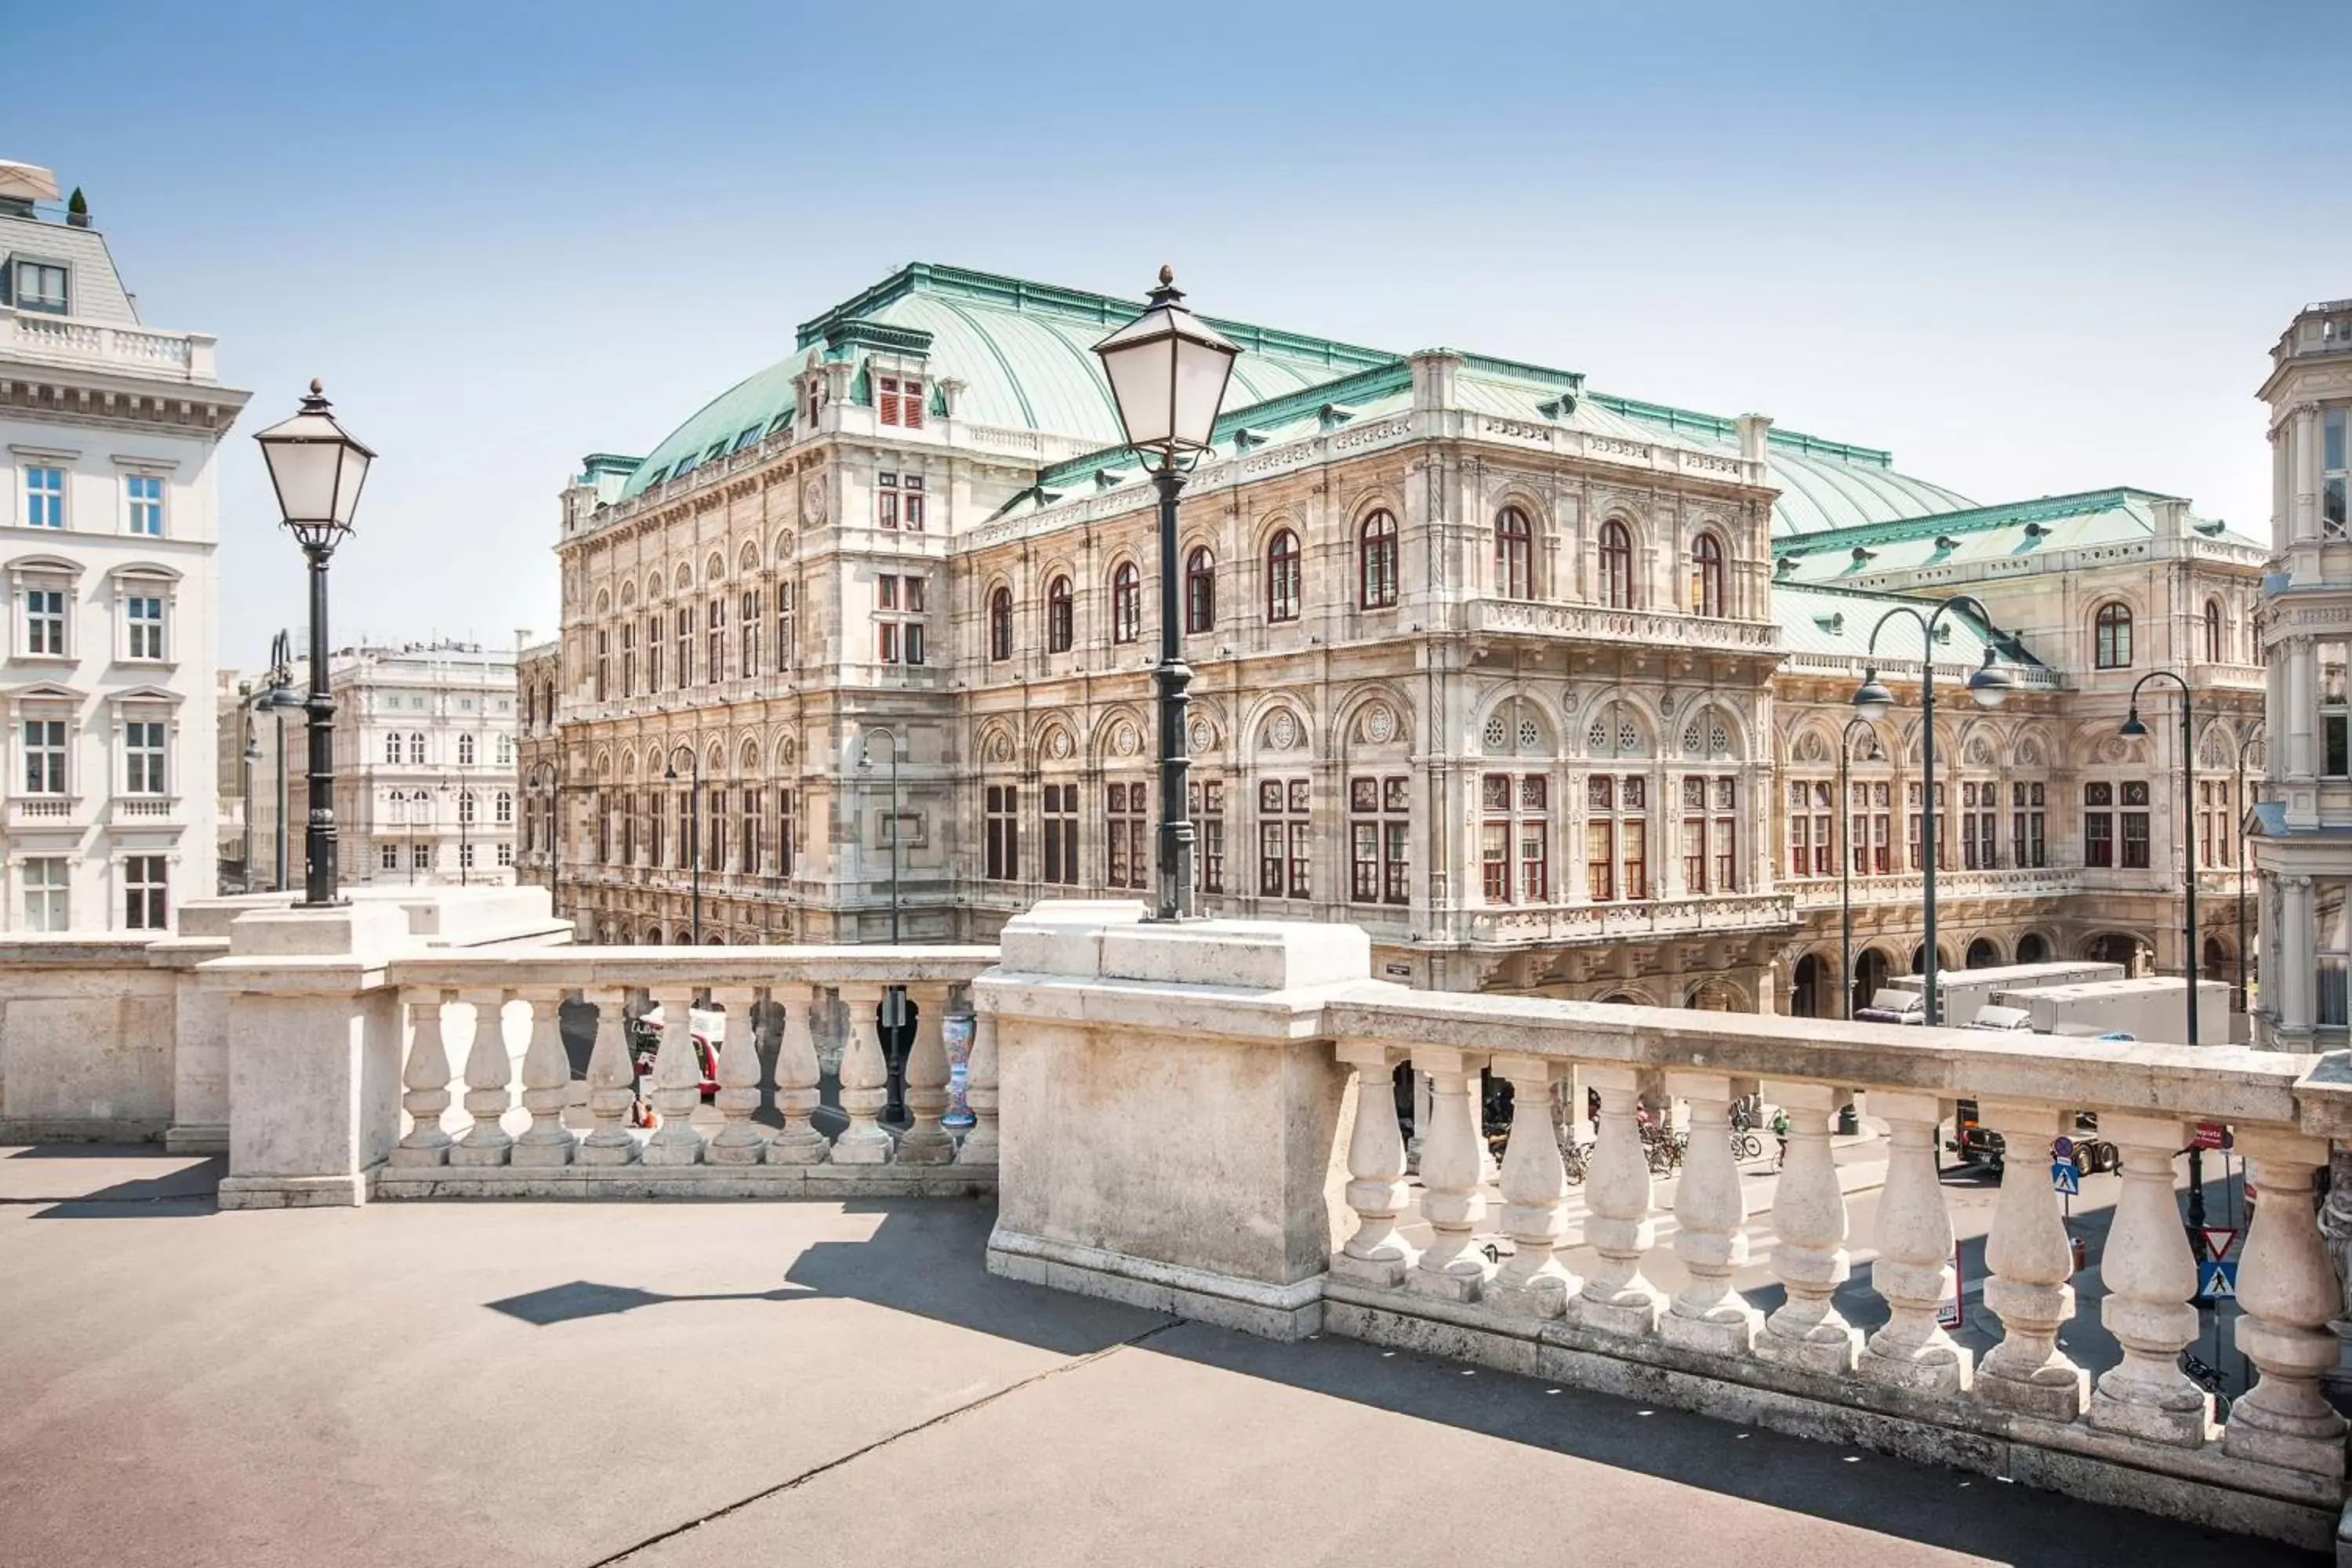 Nearby landmark, Property Building in Grand Hotel Wien